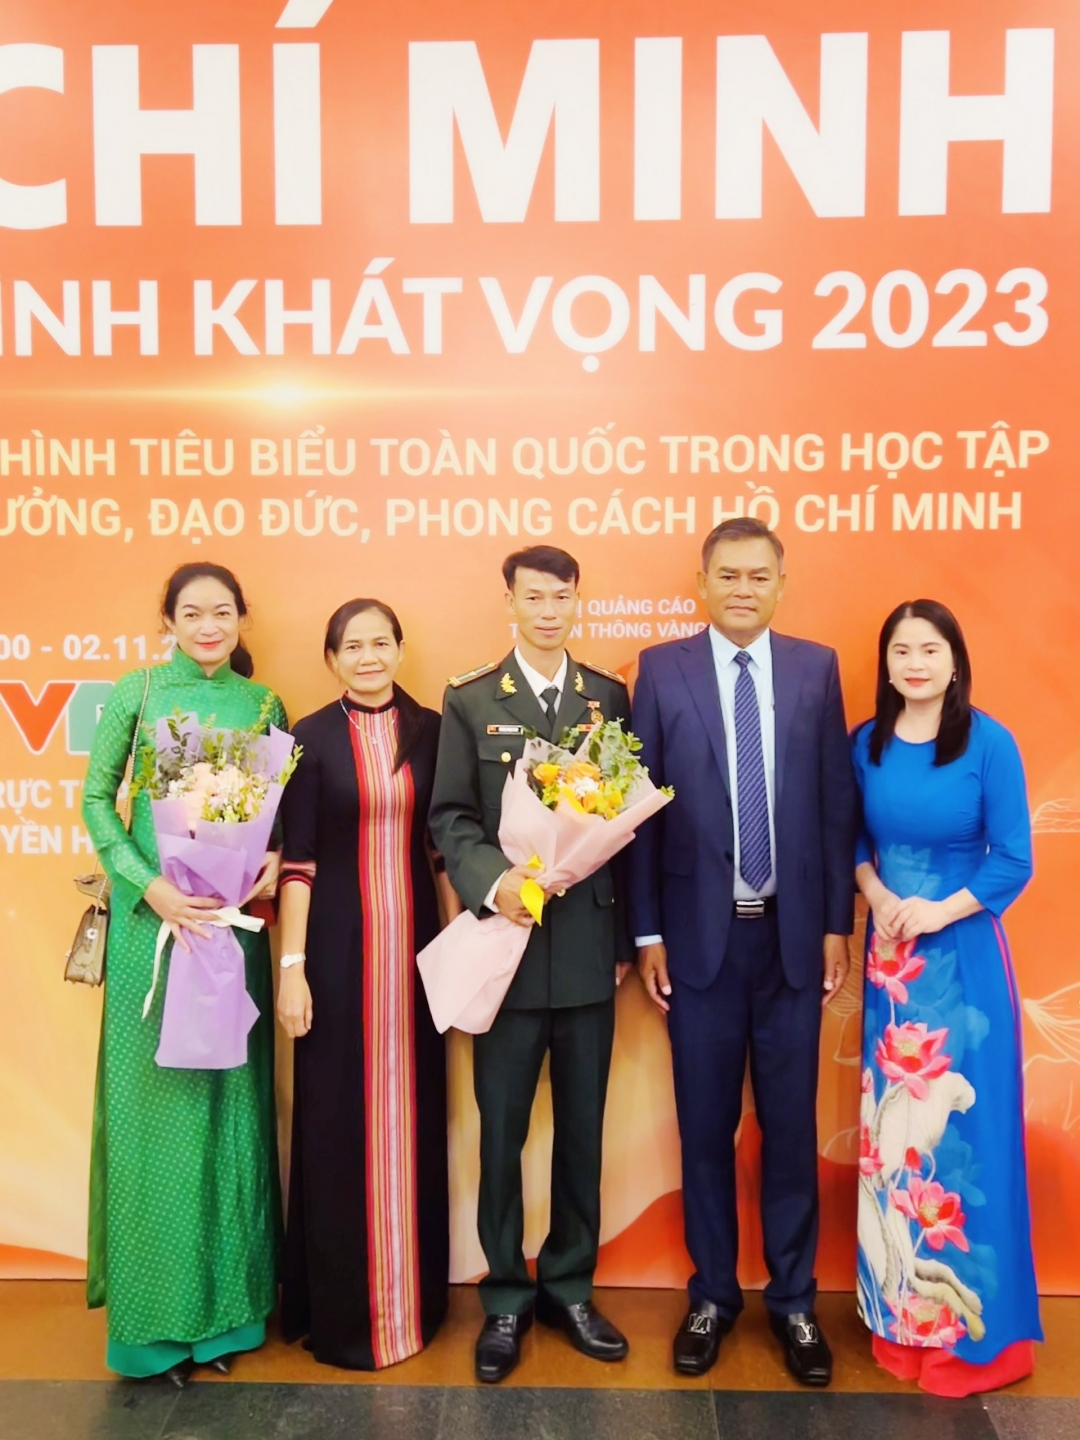 Đồng chí Y Biêr Niê, Phó Bí thư Tỉnh ủy và đồng chí HLim Niê, Trưởng Ban Tuyên giáo Tỉnh ủy cùng các đại biểu tỉnh Đắk Lắk tham dự chương trình.